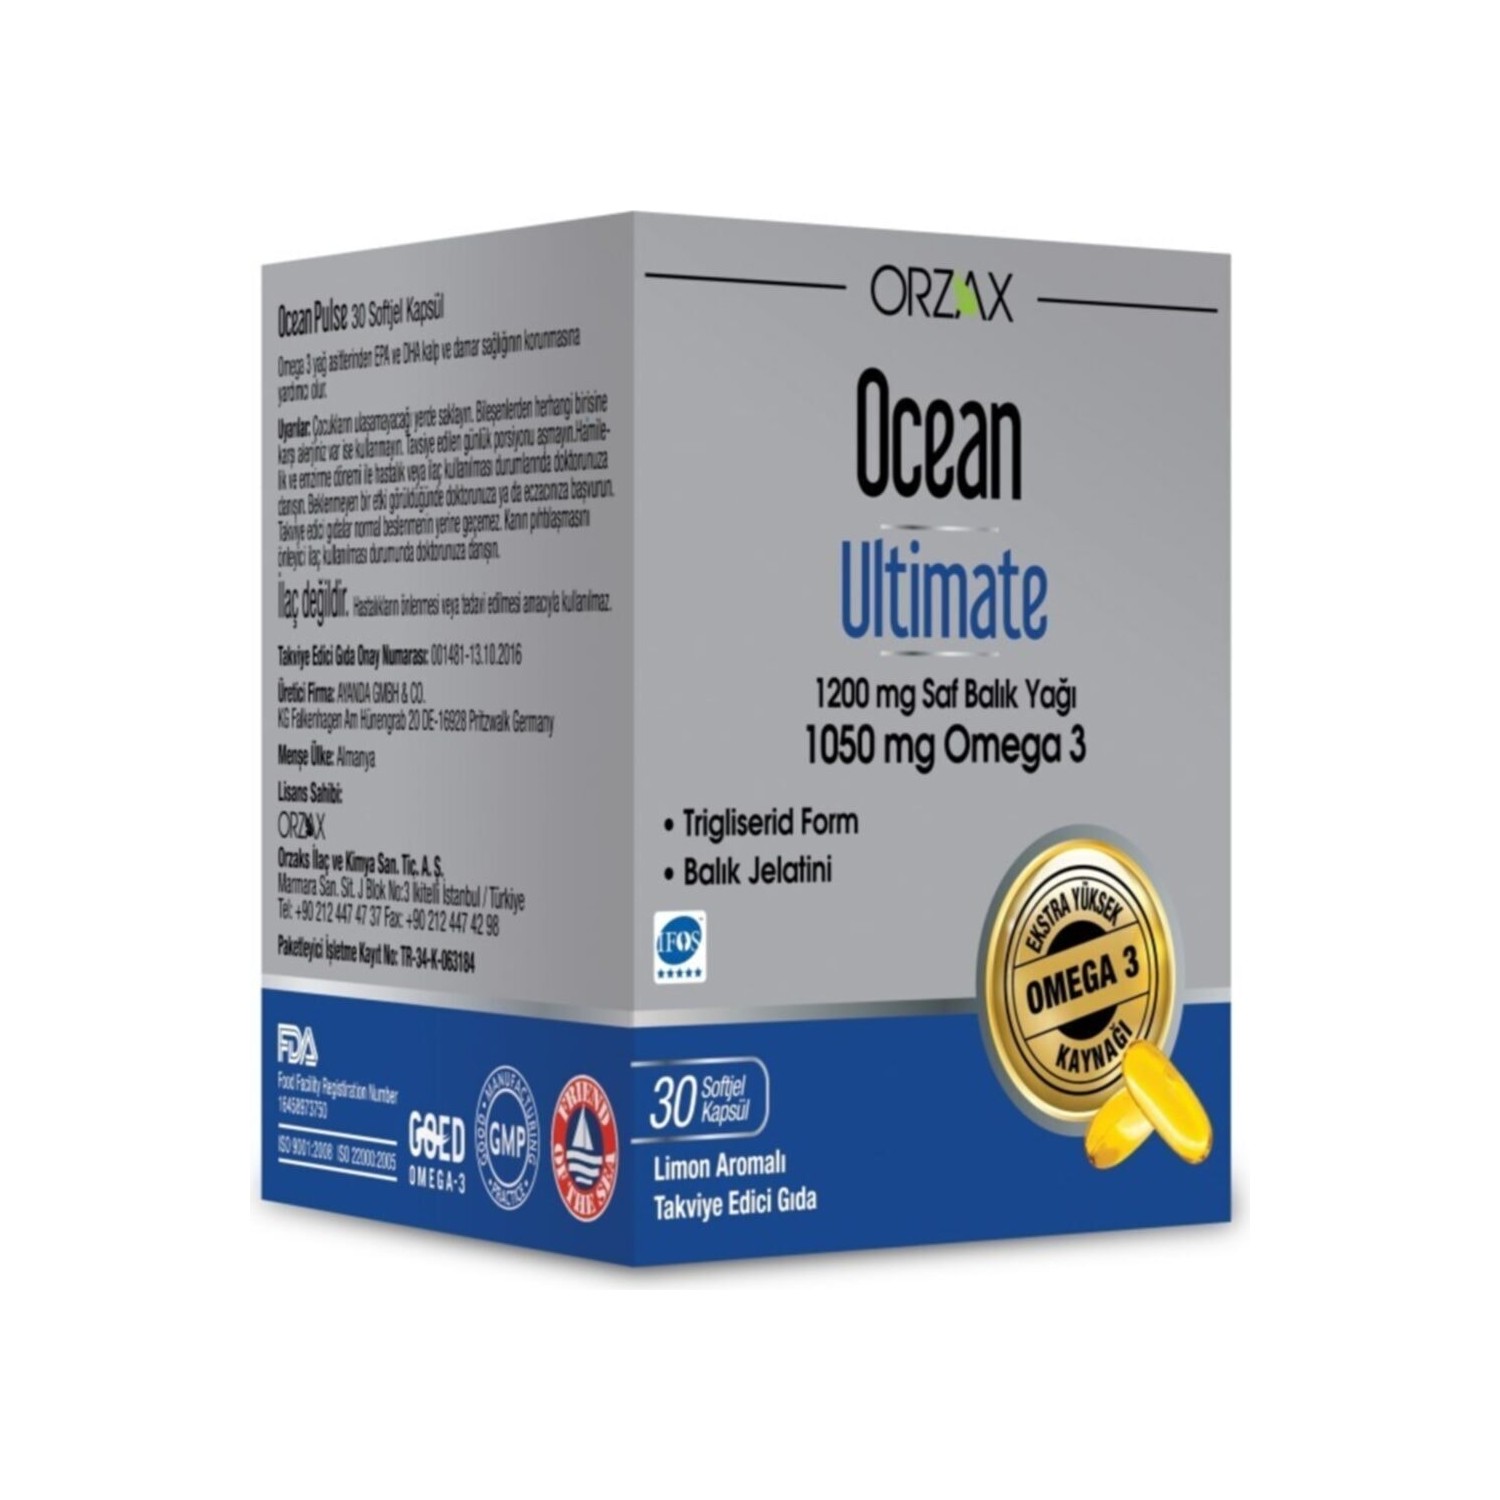 Пищевая добавка Ocean Supplement Ocean Ultimate 1200 мг, 30 капсул суперсжигатель жира ironman super cuts с термогенным эффектом 30 капсул